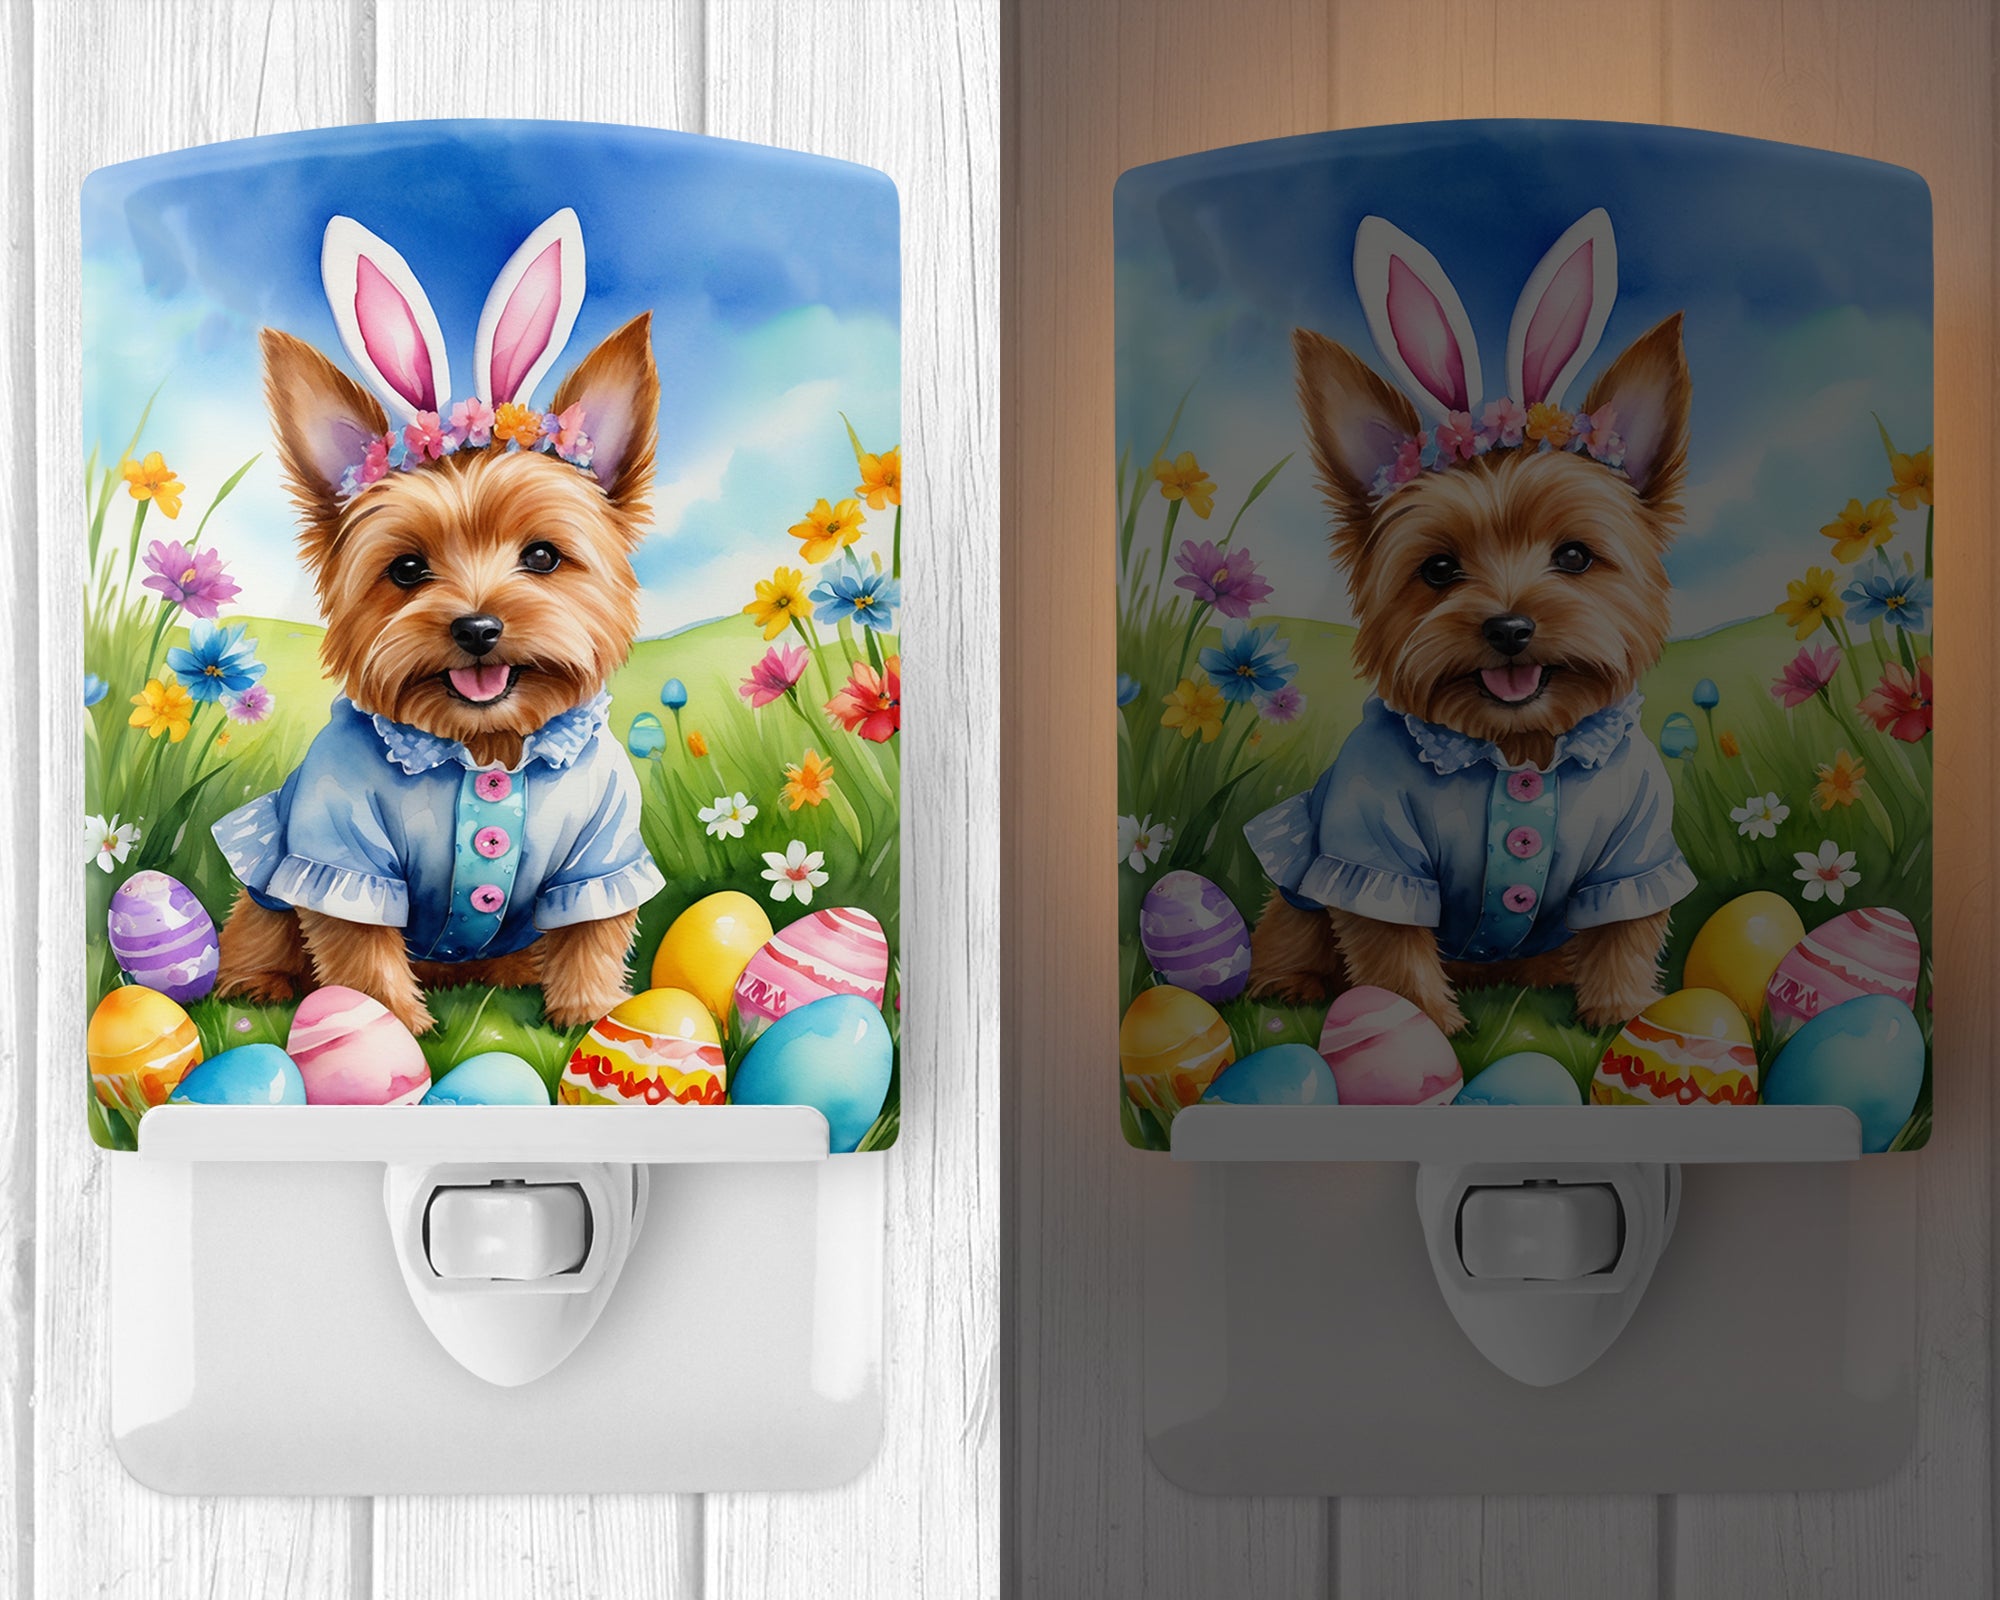 Buy this Norwich Terrier Easter Egg Hunt Ceramic Night Light